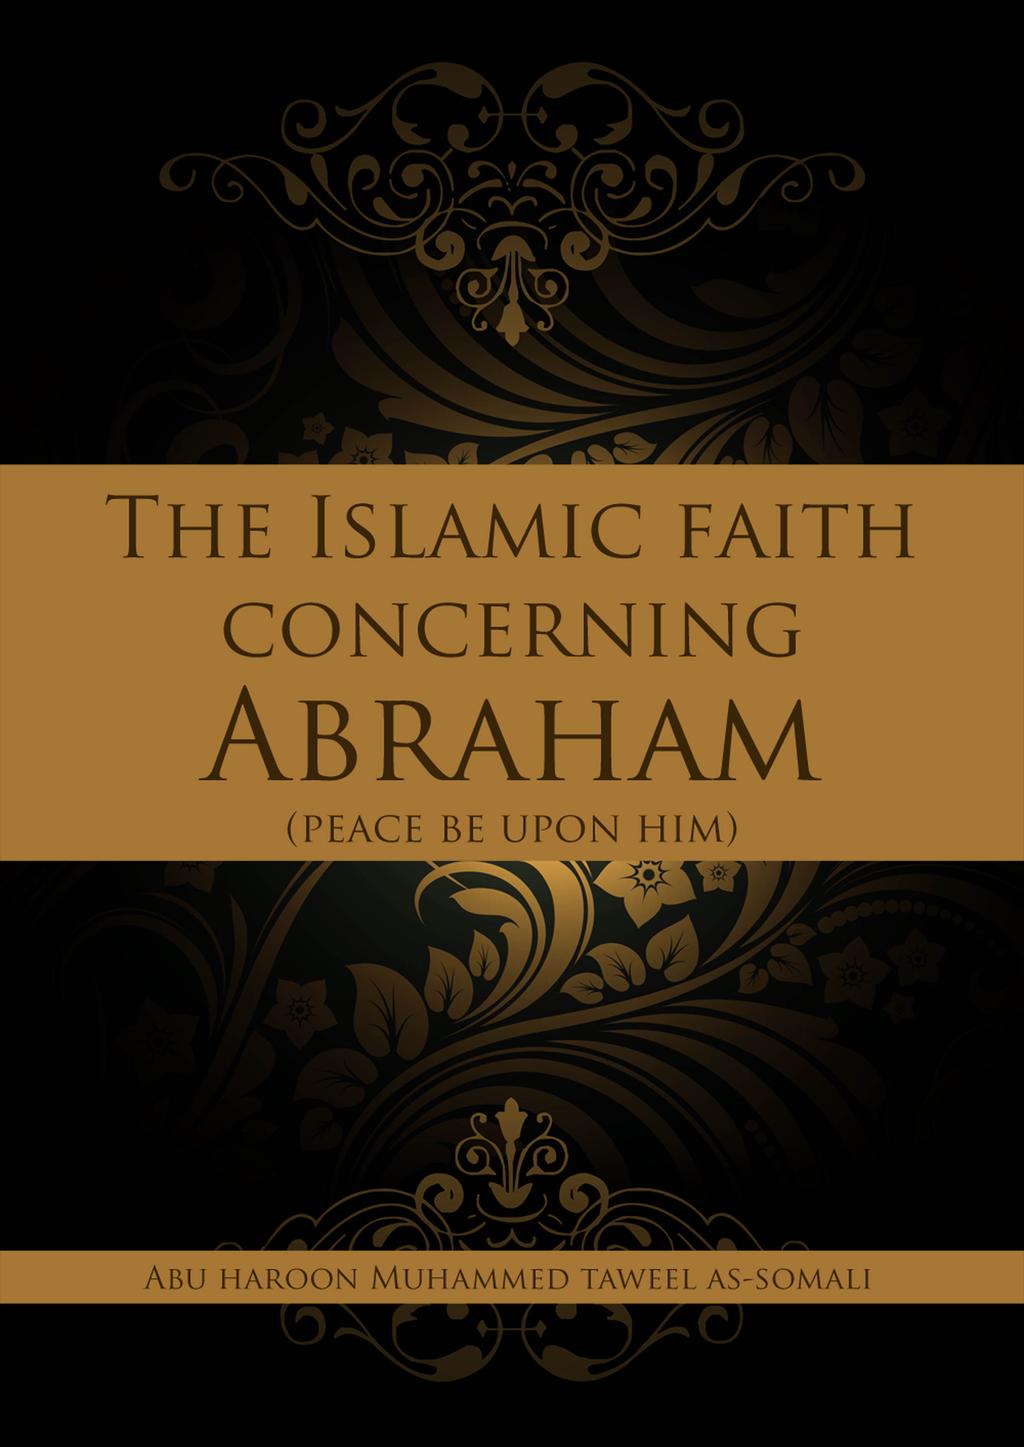 THE ISLAMIC FAITH CONCERNING AB RAHAM (PEACE